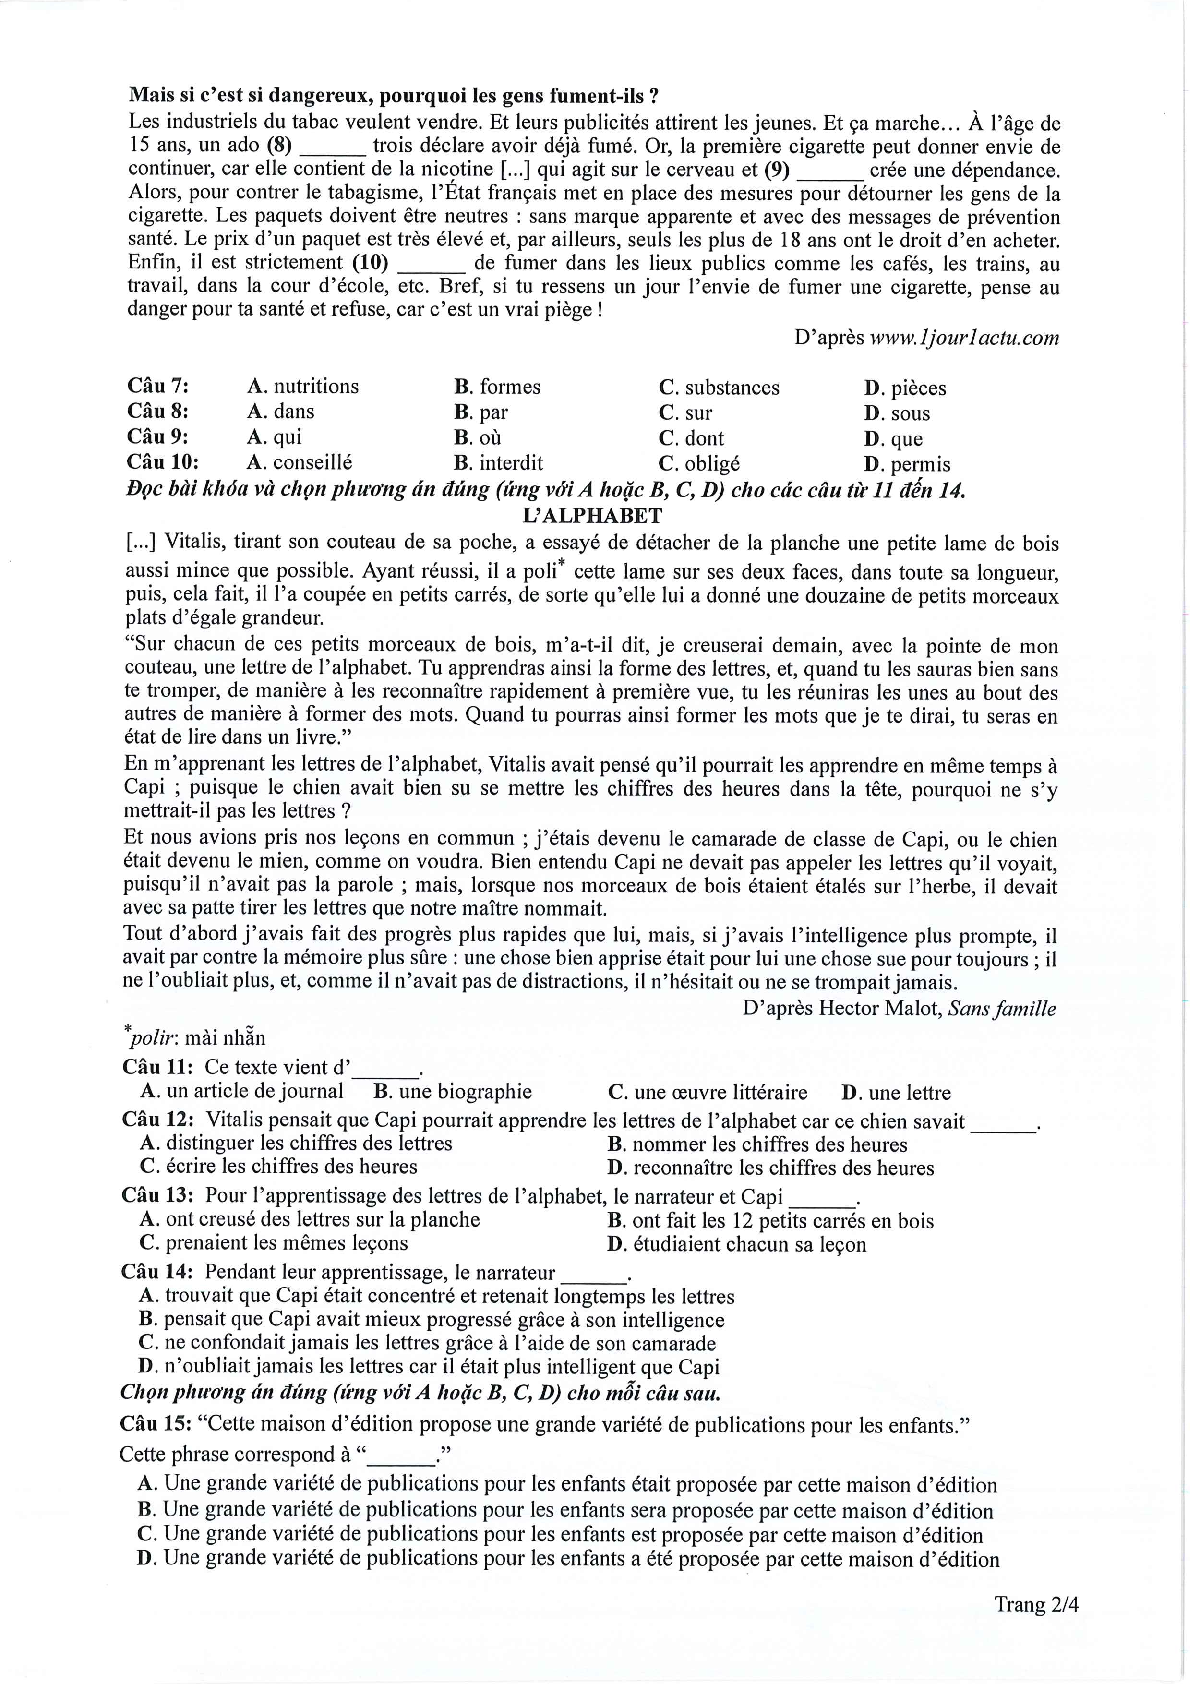 Đề thi tham khảo Tiếng Pháp 2024 có đáp án (trang 2)